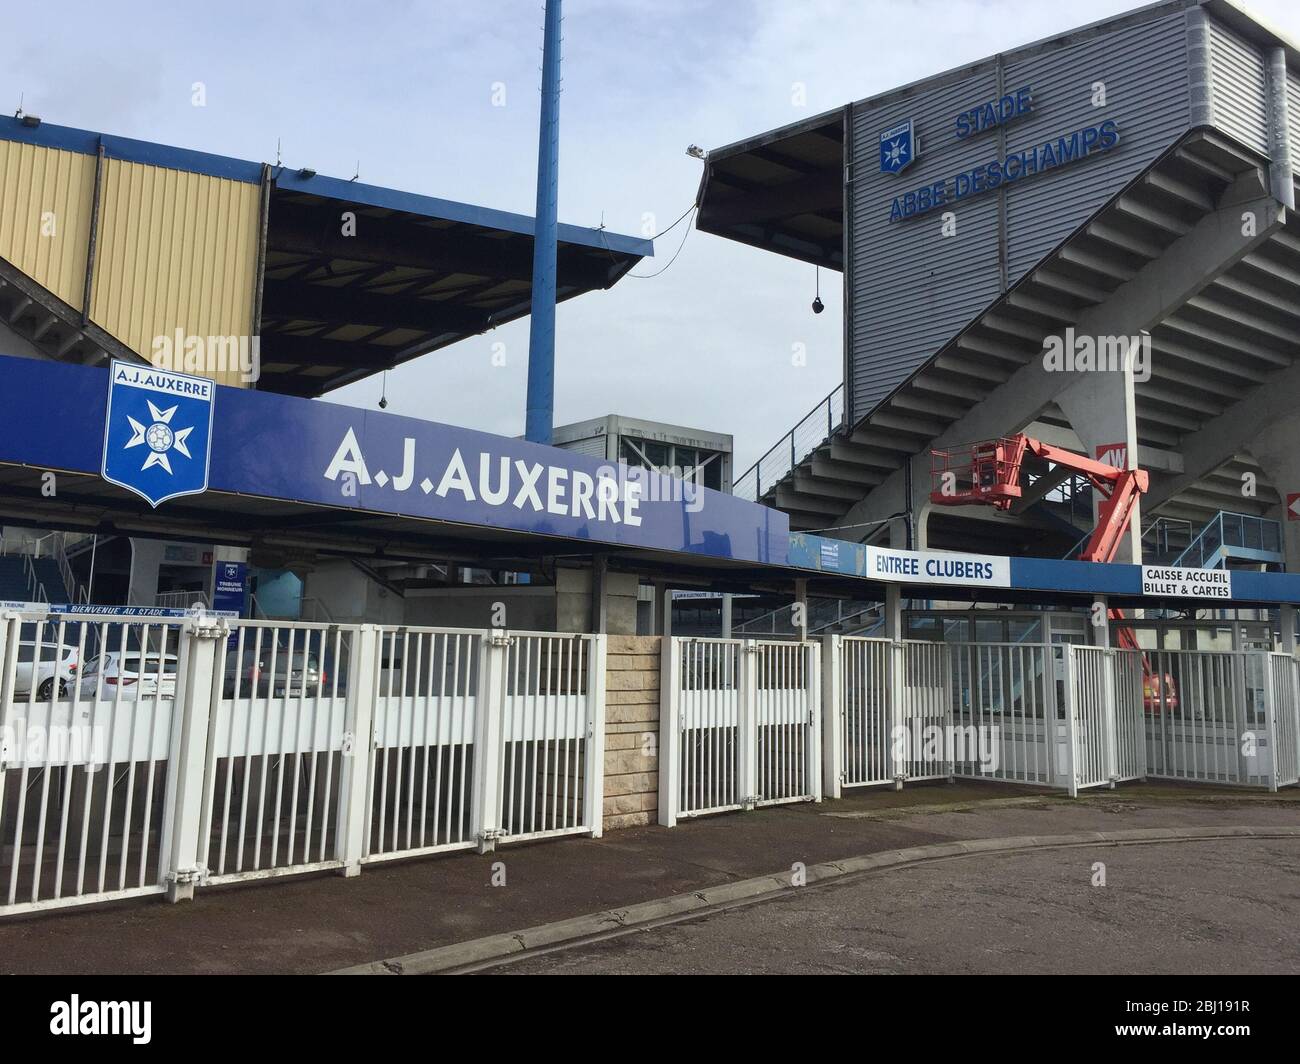 Auxerre , Bourgogne Franche Comte / France - 10 27 2019 : aja aj auxerre  stadium entrance Stock Photo - Alamy